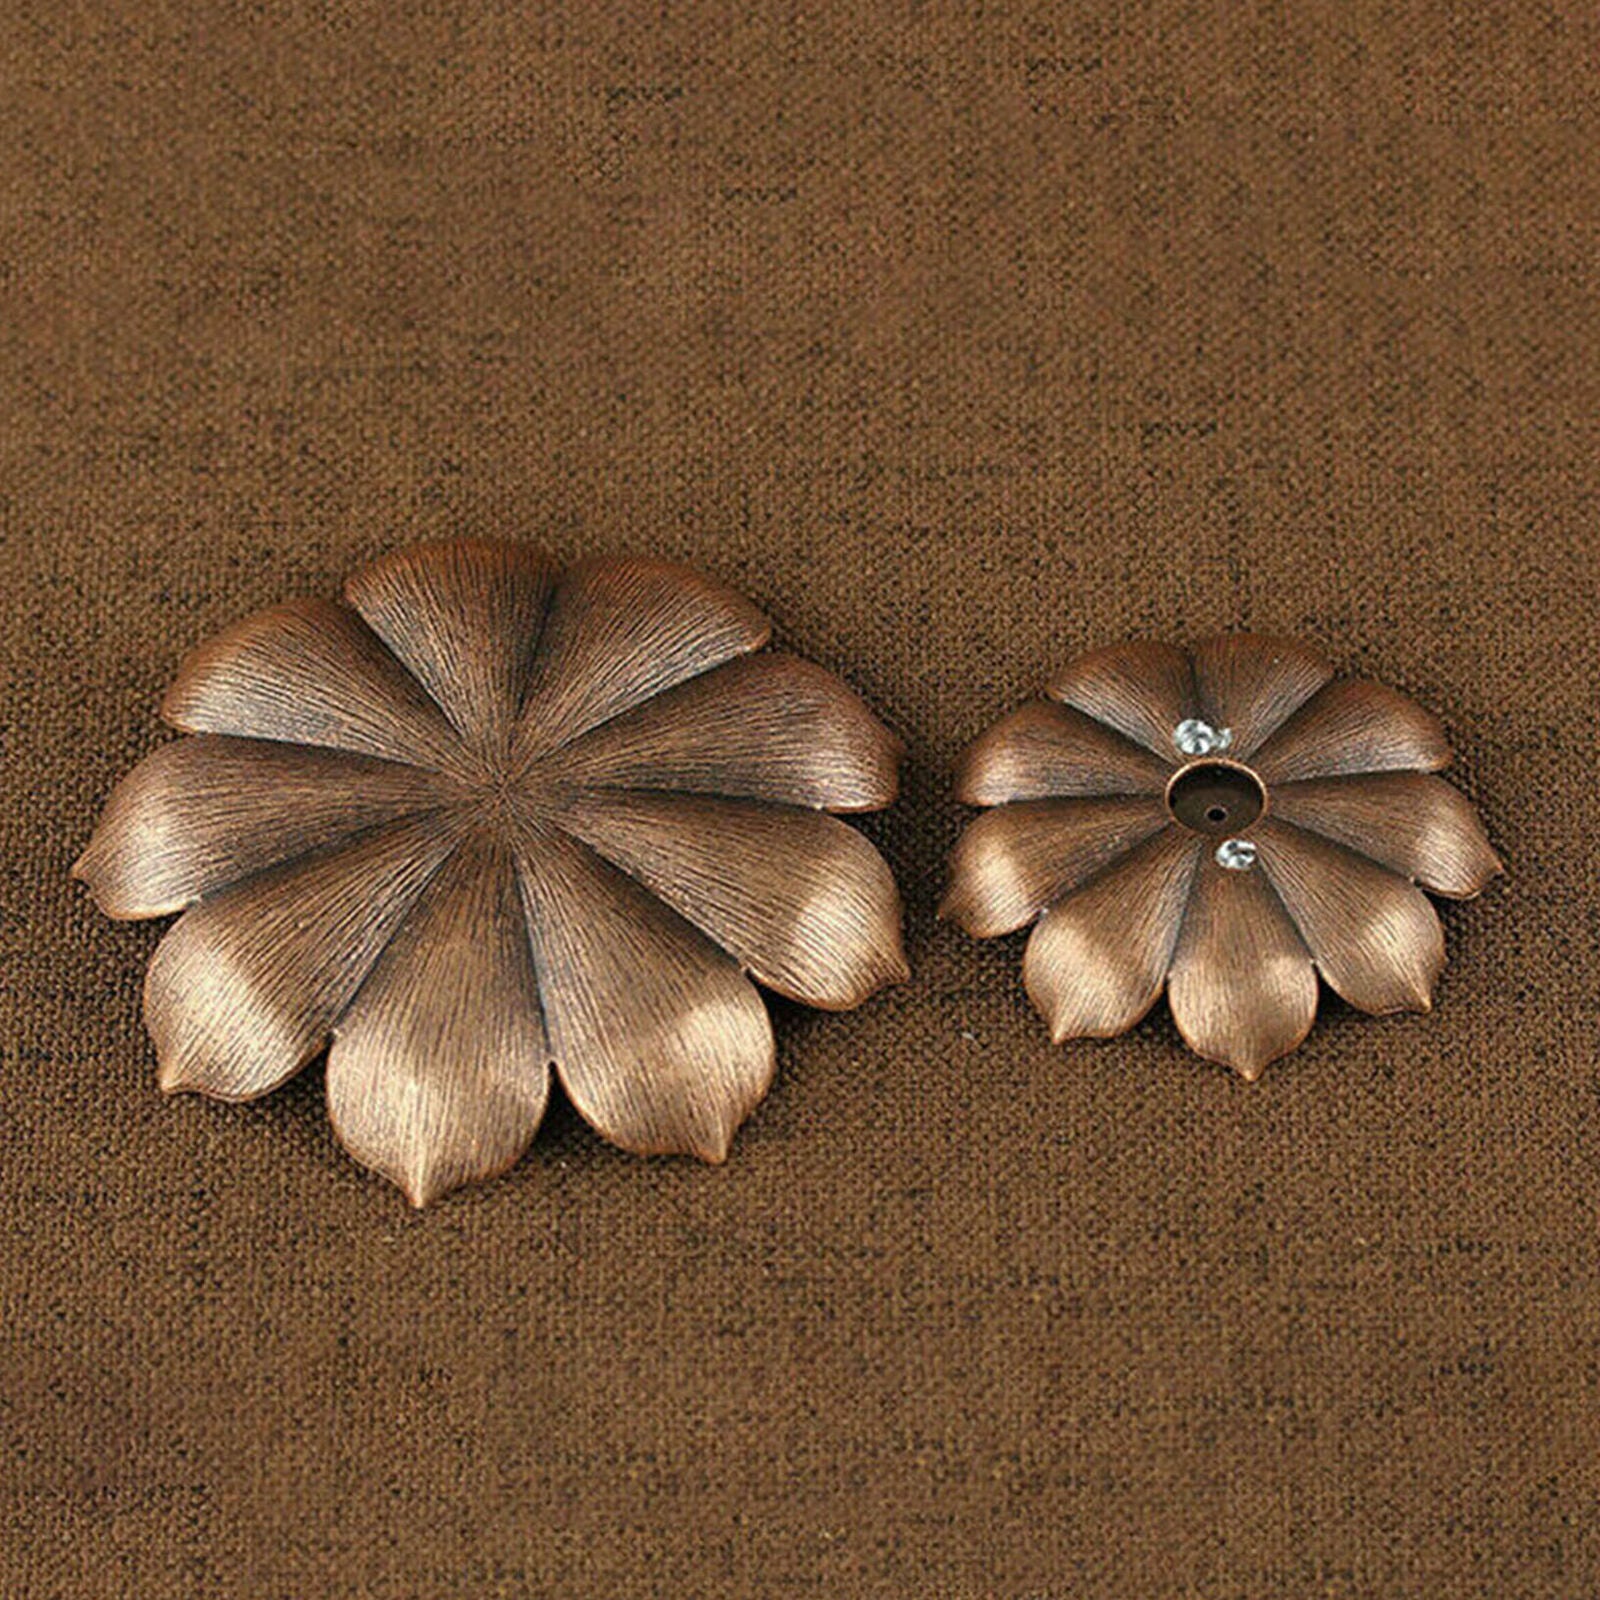 Incense Burner Stick Holder Plate Buddhism Coil Lotus Censer Bronze Copper